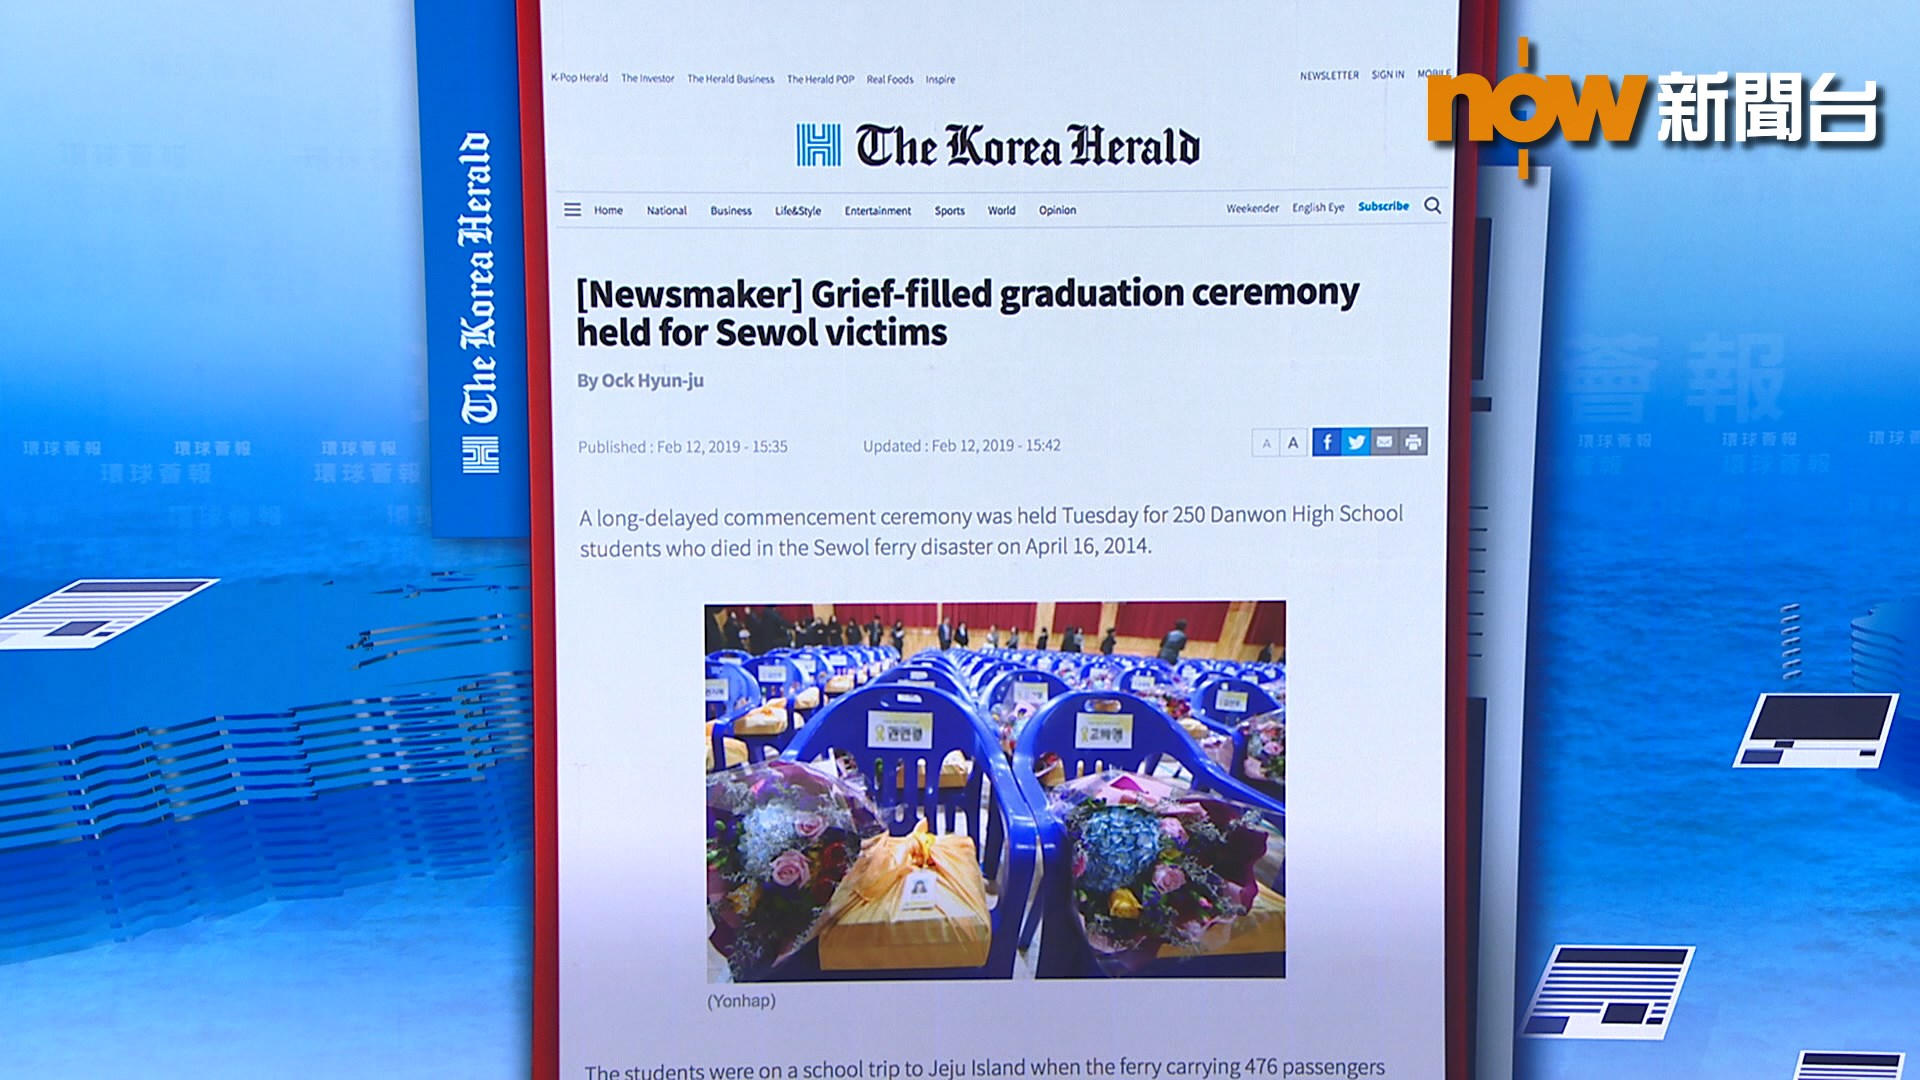 【環球薈報】南韓為歲月號事故遇難學生辦畢業典禮